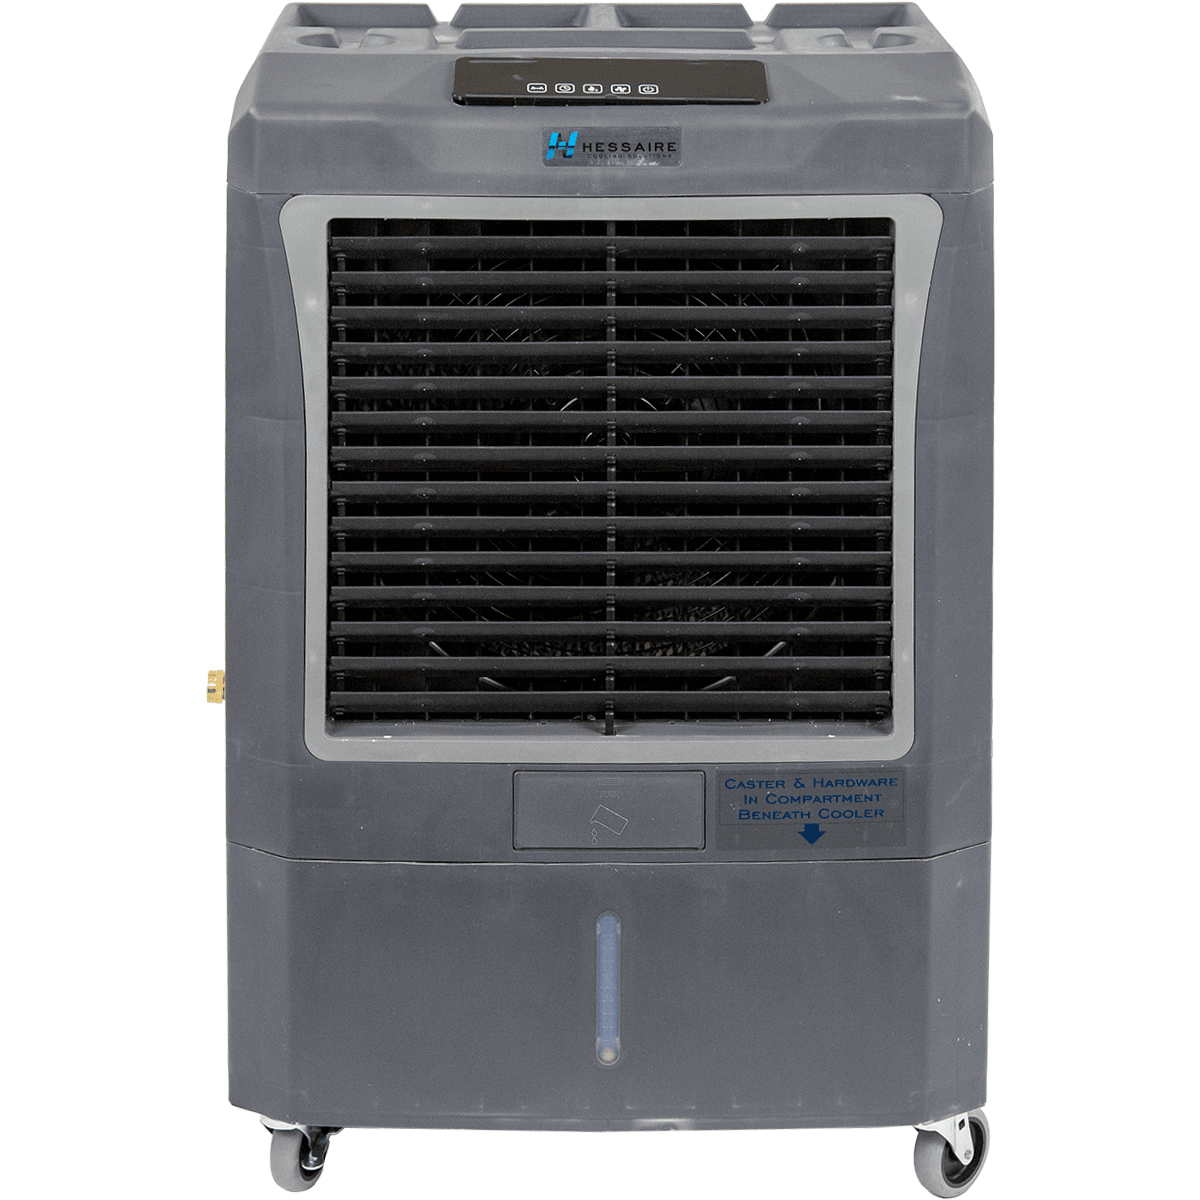 Hessaire MC37A 3,100 CFM Evaporative Cooler w/ Automatic Controls